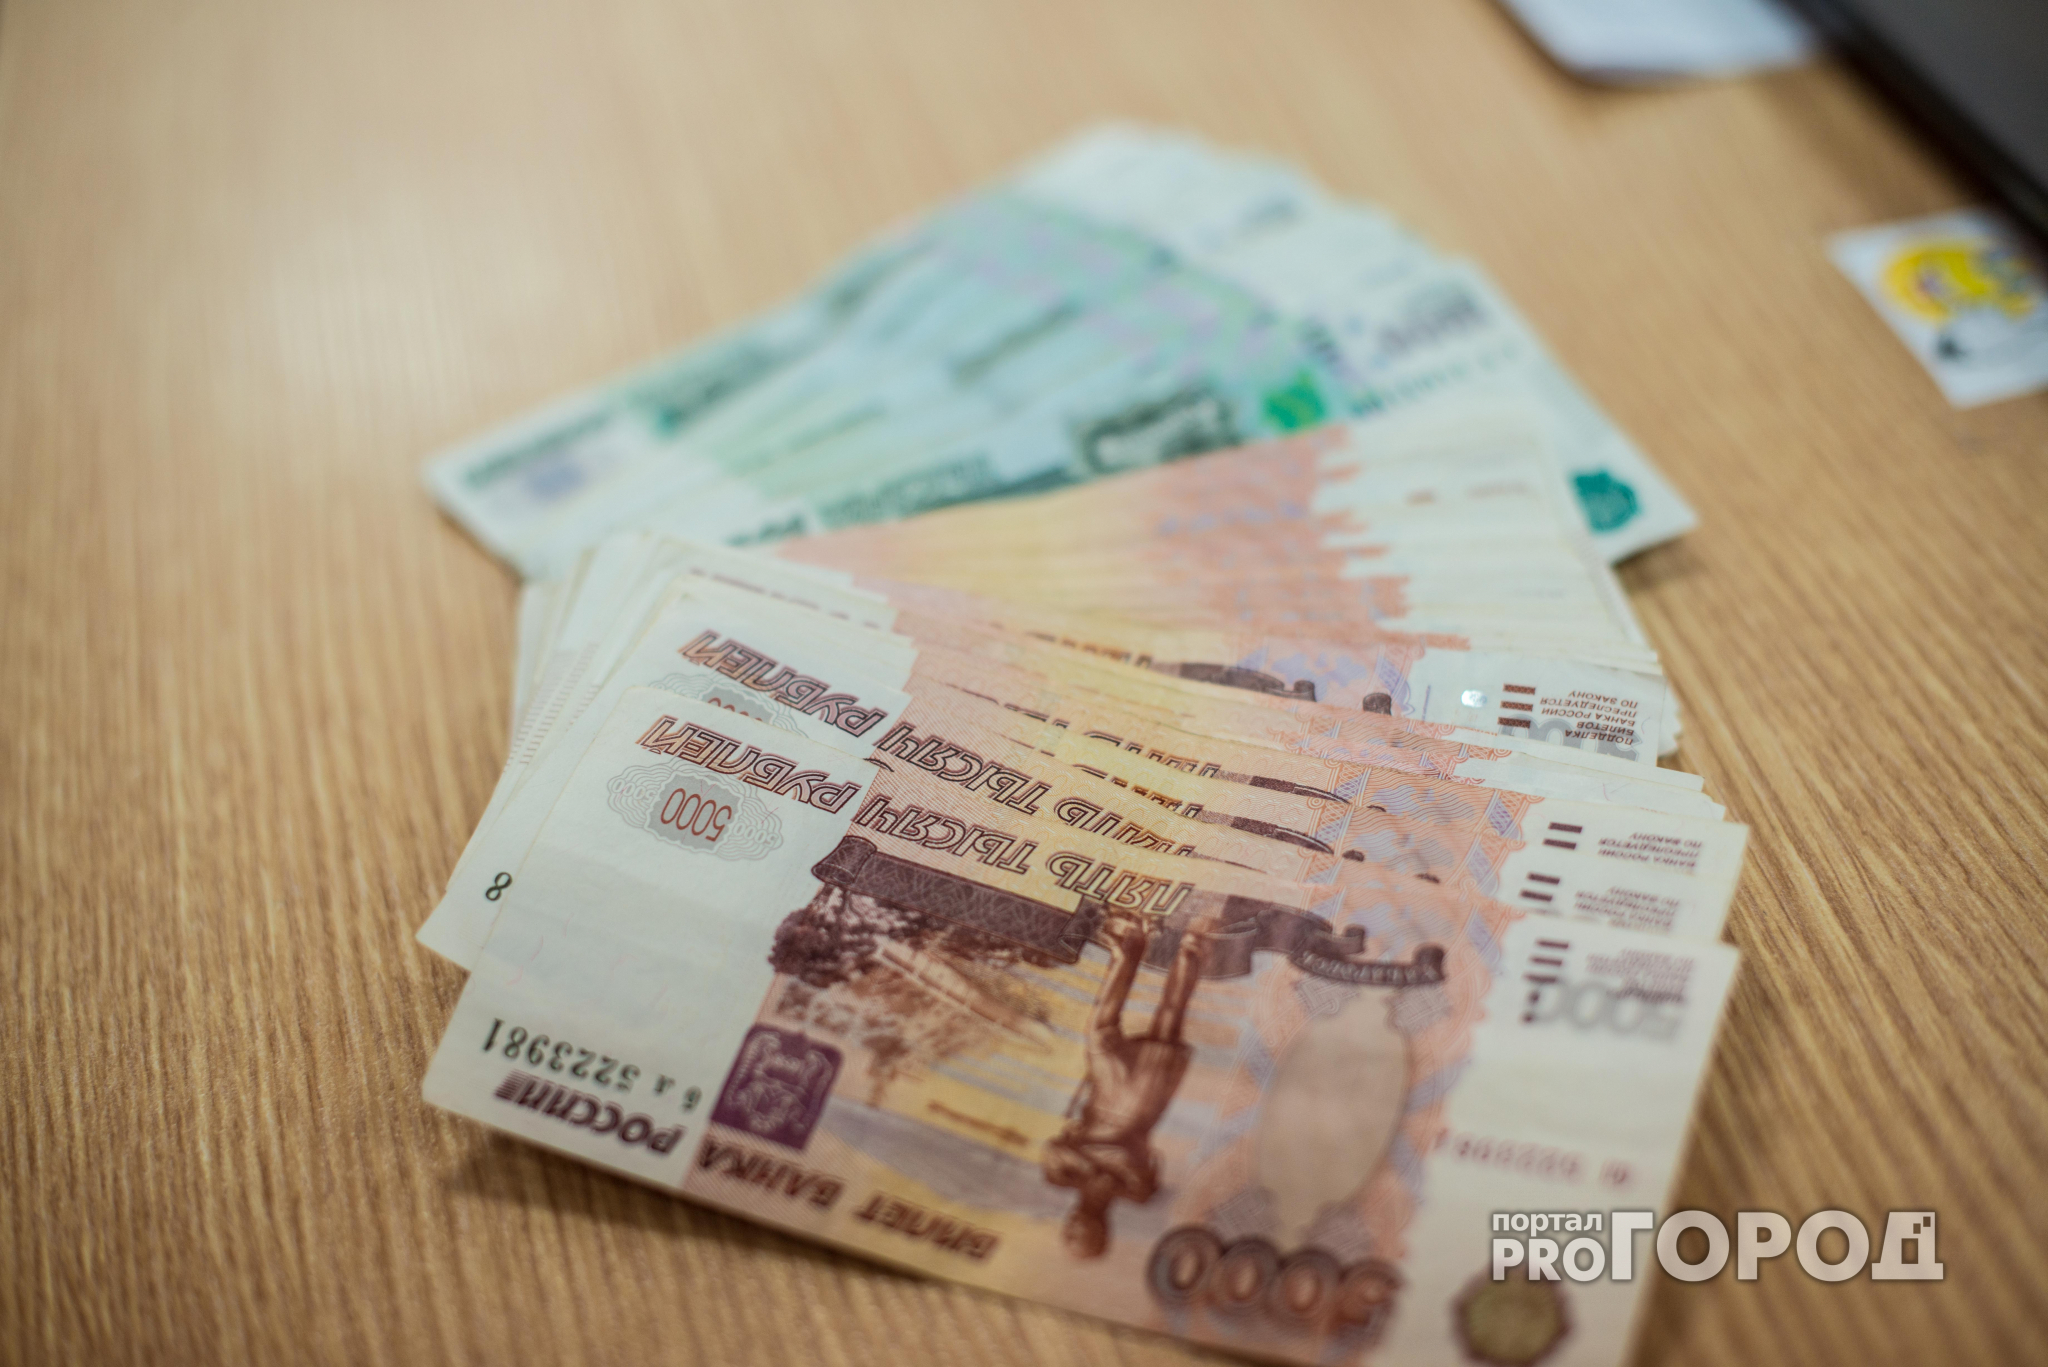 Сыктывкарцы о средней зарплате в 40 тысяч рублей: «Что за бред?»